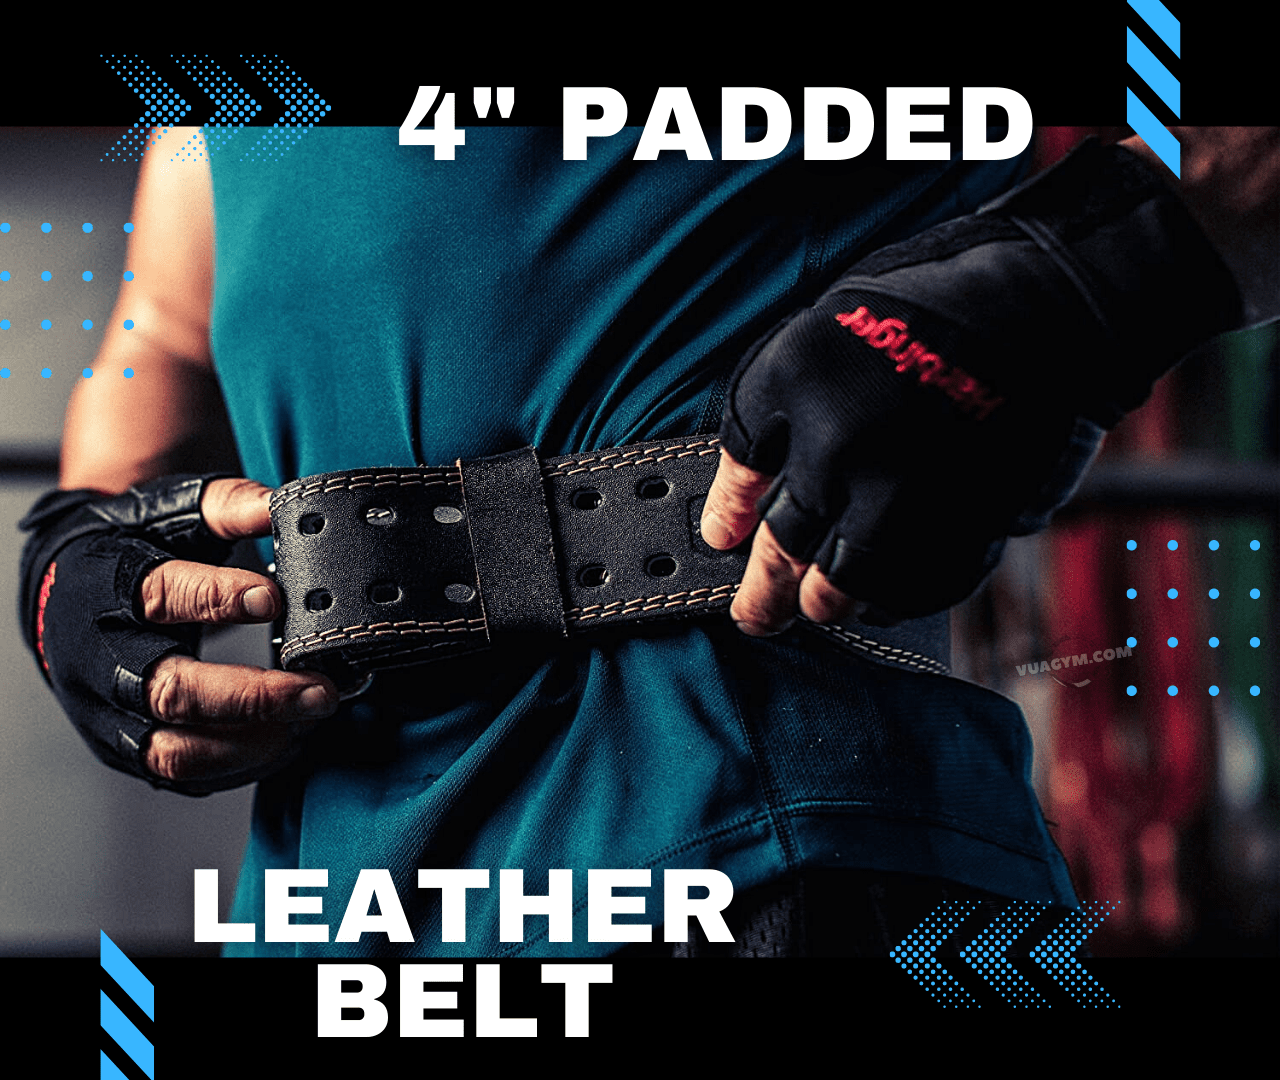 Harbinger - 4" Padded Leather Belt - 4 padded 1